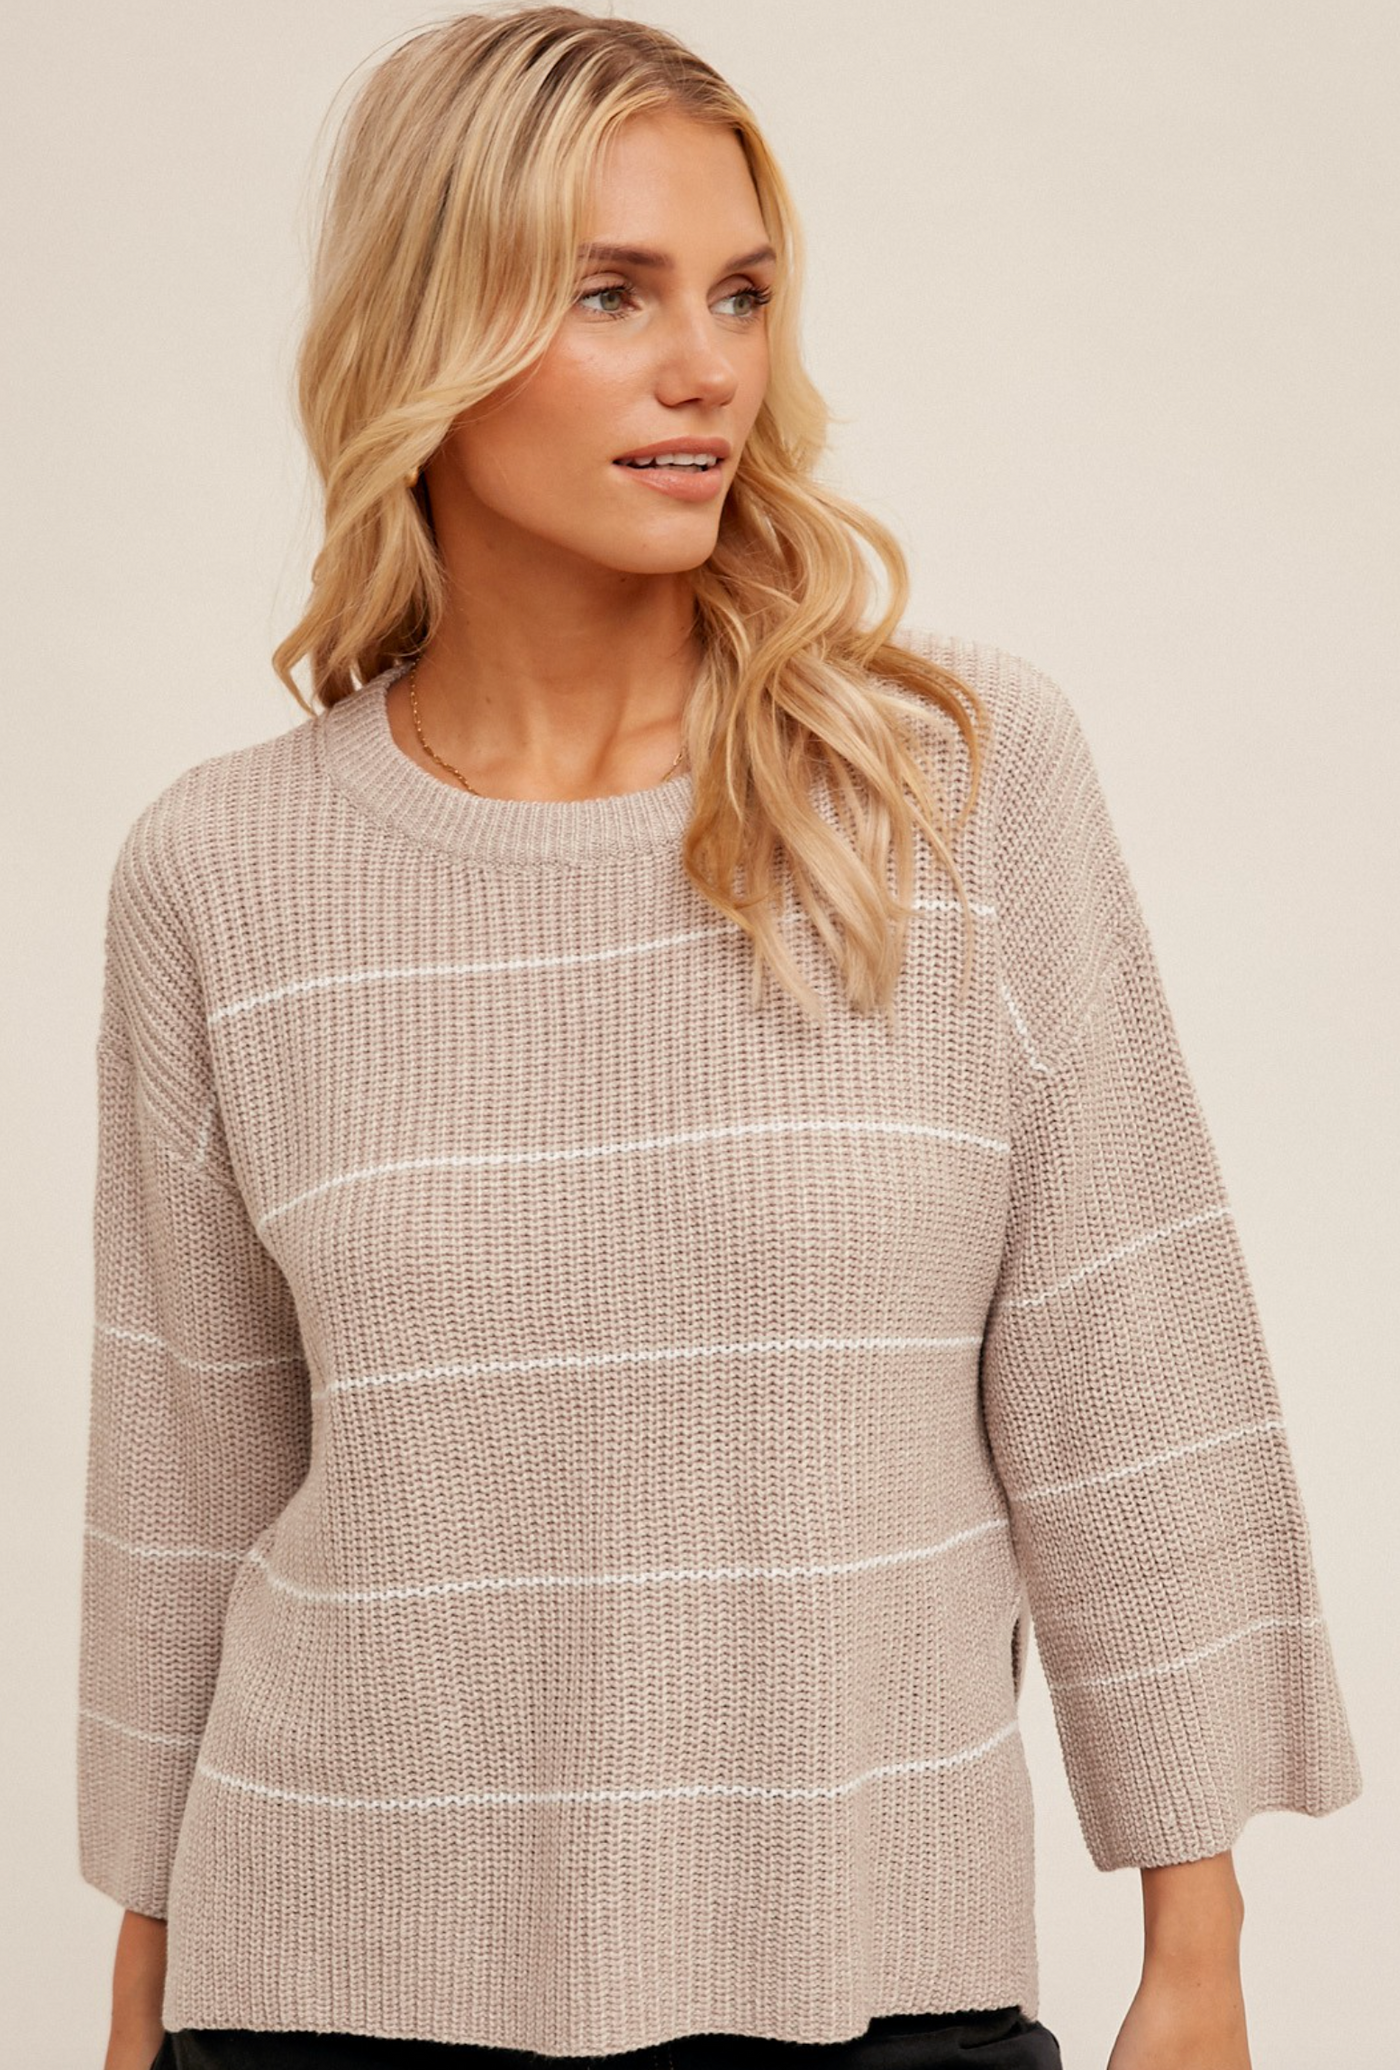 Stillwater Sweater